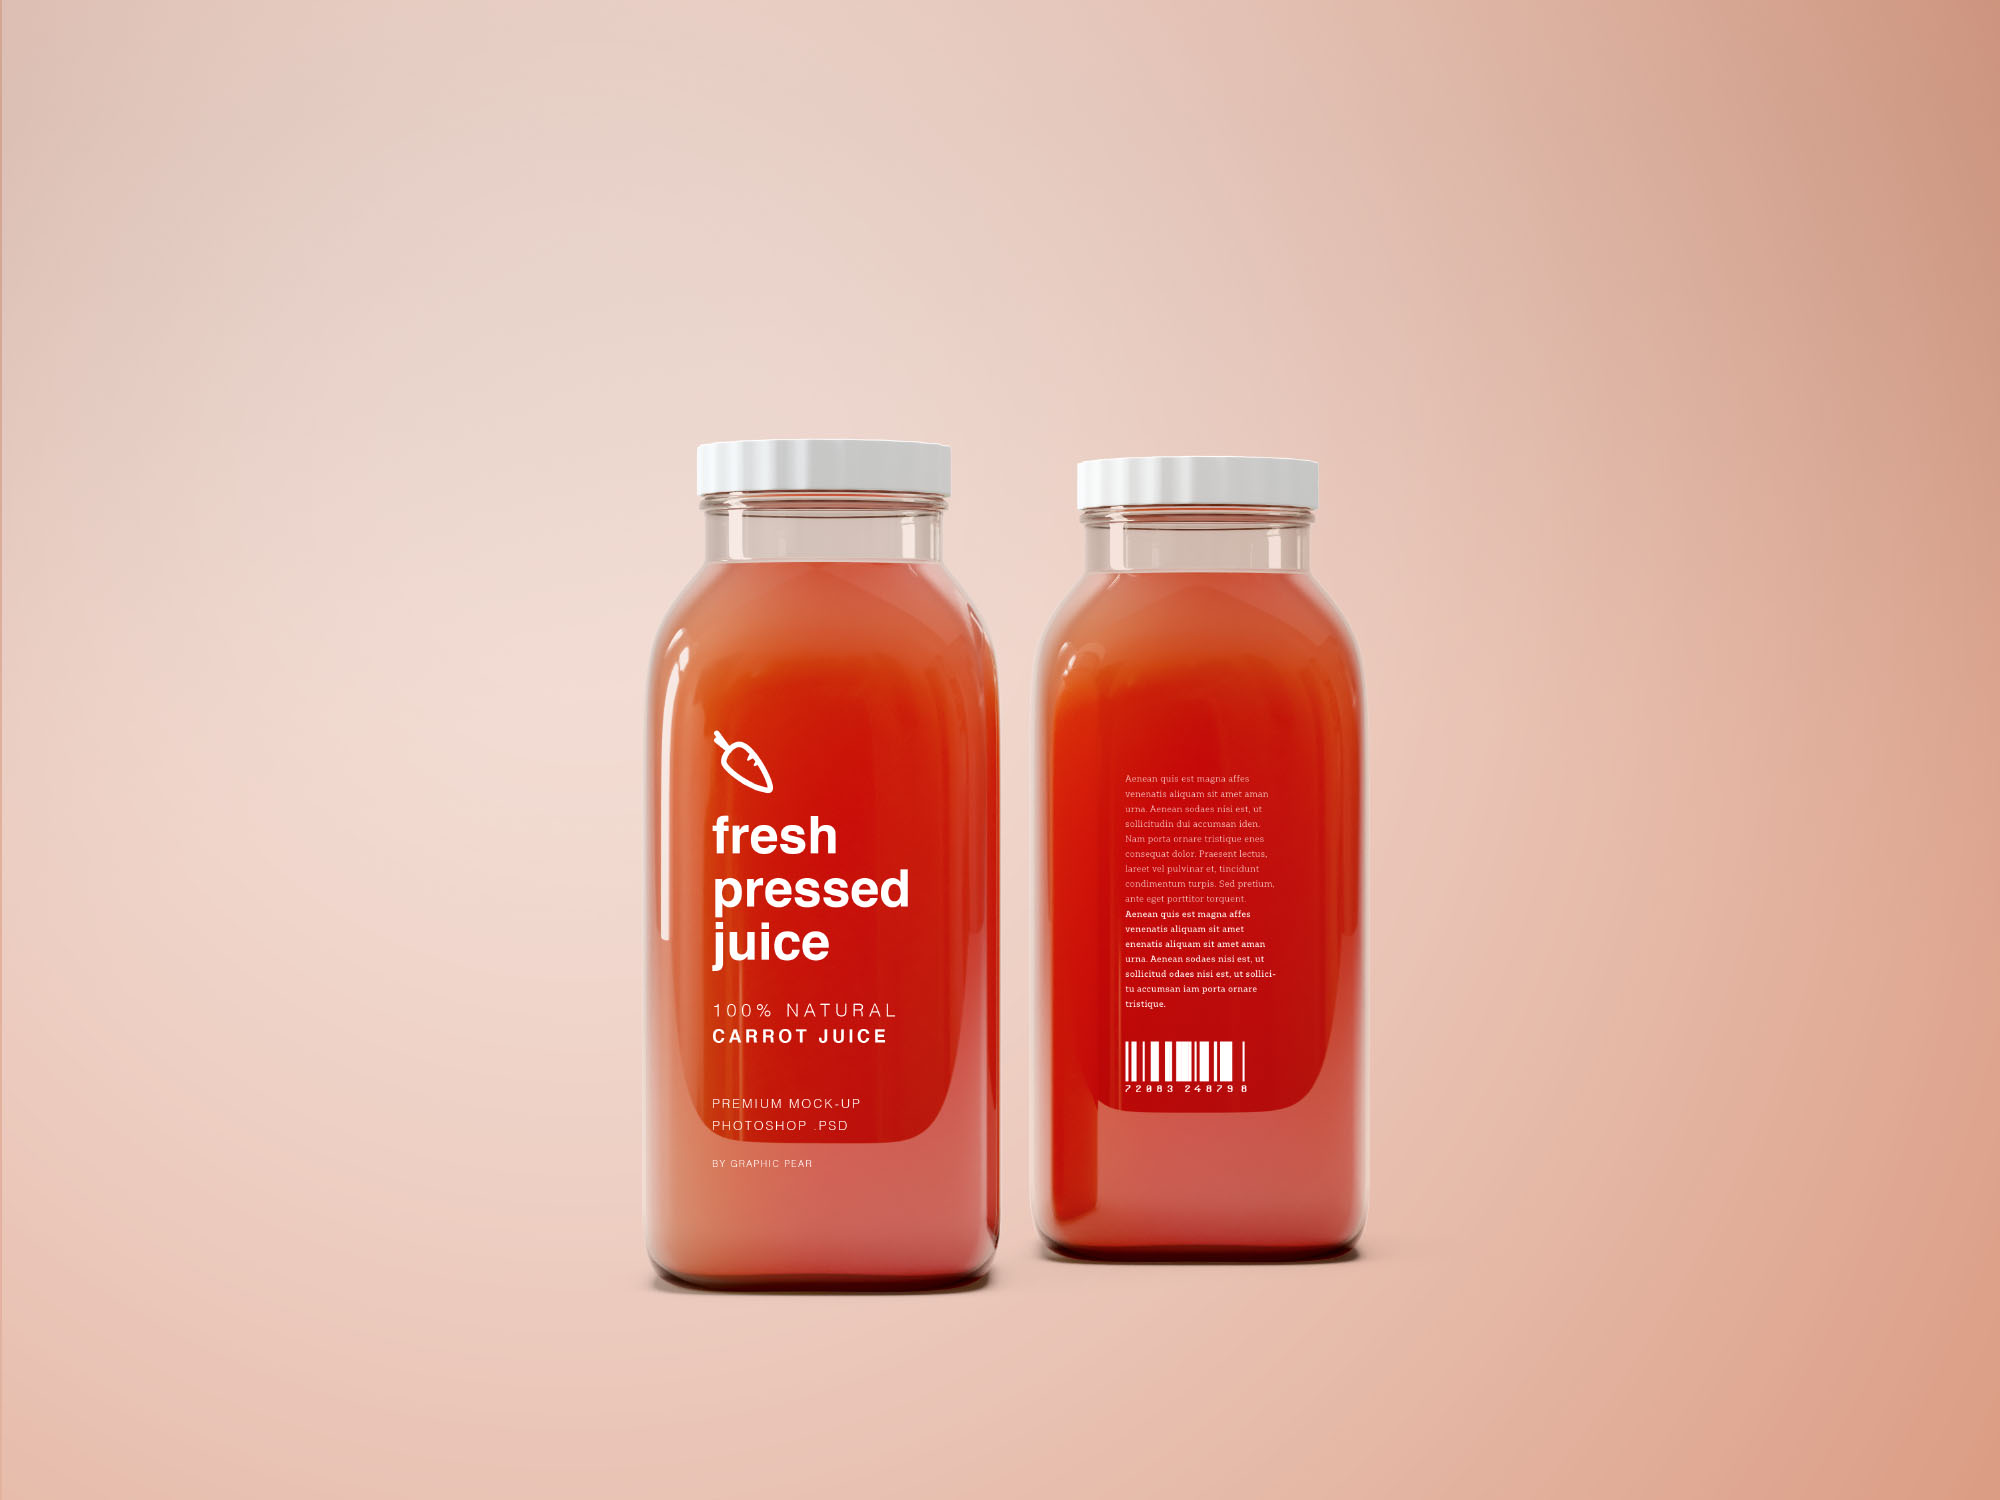 果汁/饮料玻璃瓶外观设计PSD样机模板 Glass Juice Bottle Mockup PSD插图(3)